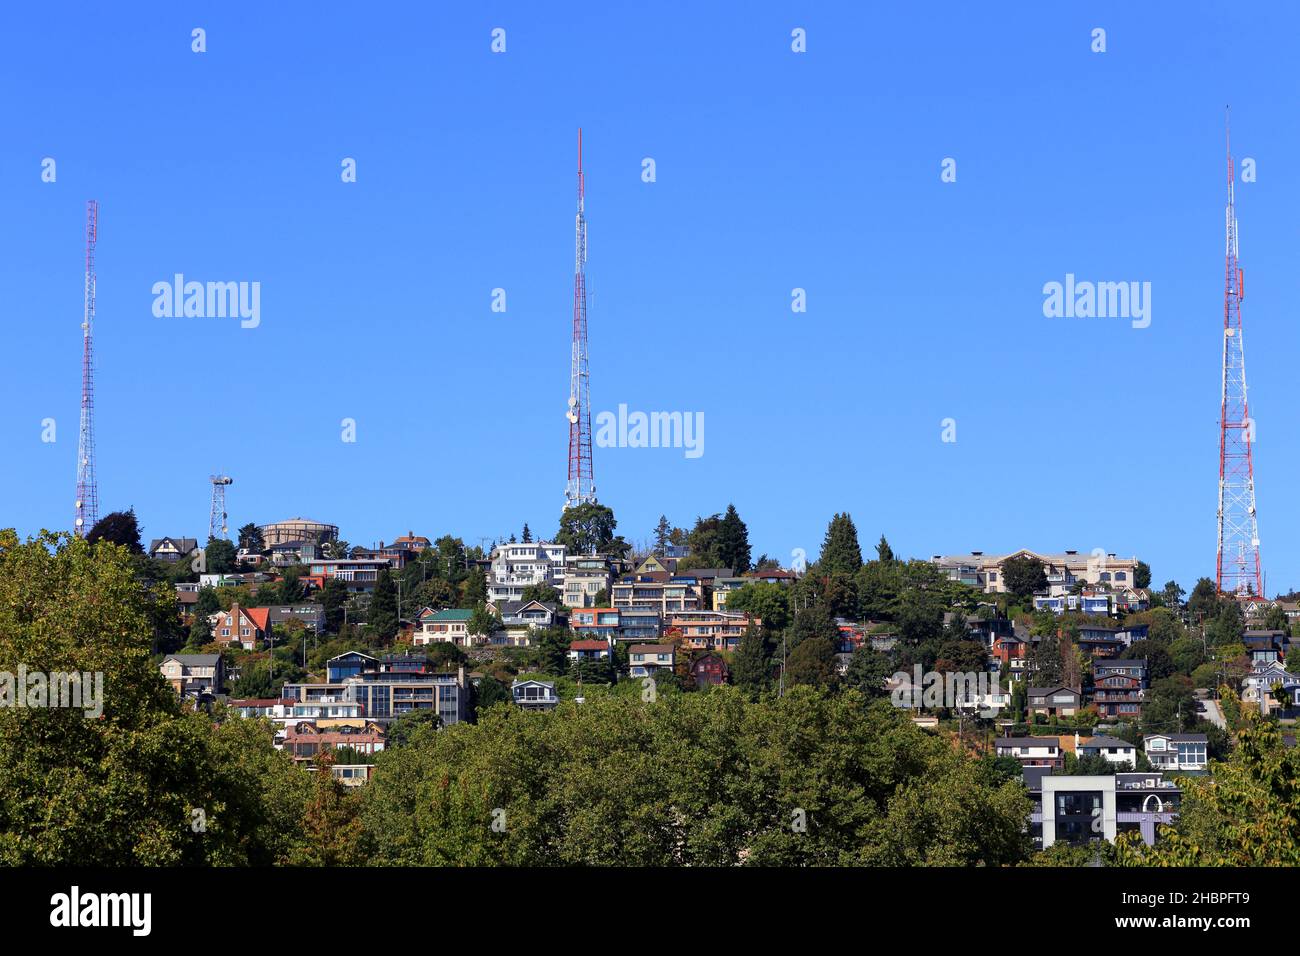 Queen Anne Hill TV Towers, Seattle, WA. Les 3 antennes de radiodiffusion de télévision/radio de (de gauche à droite) KIRO KOMO KING surplombant la ville de la reine Anne. Banque D'Images